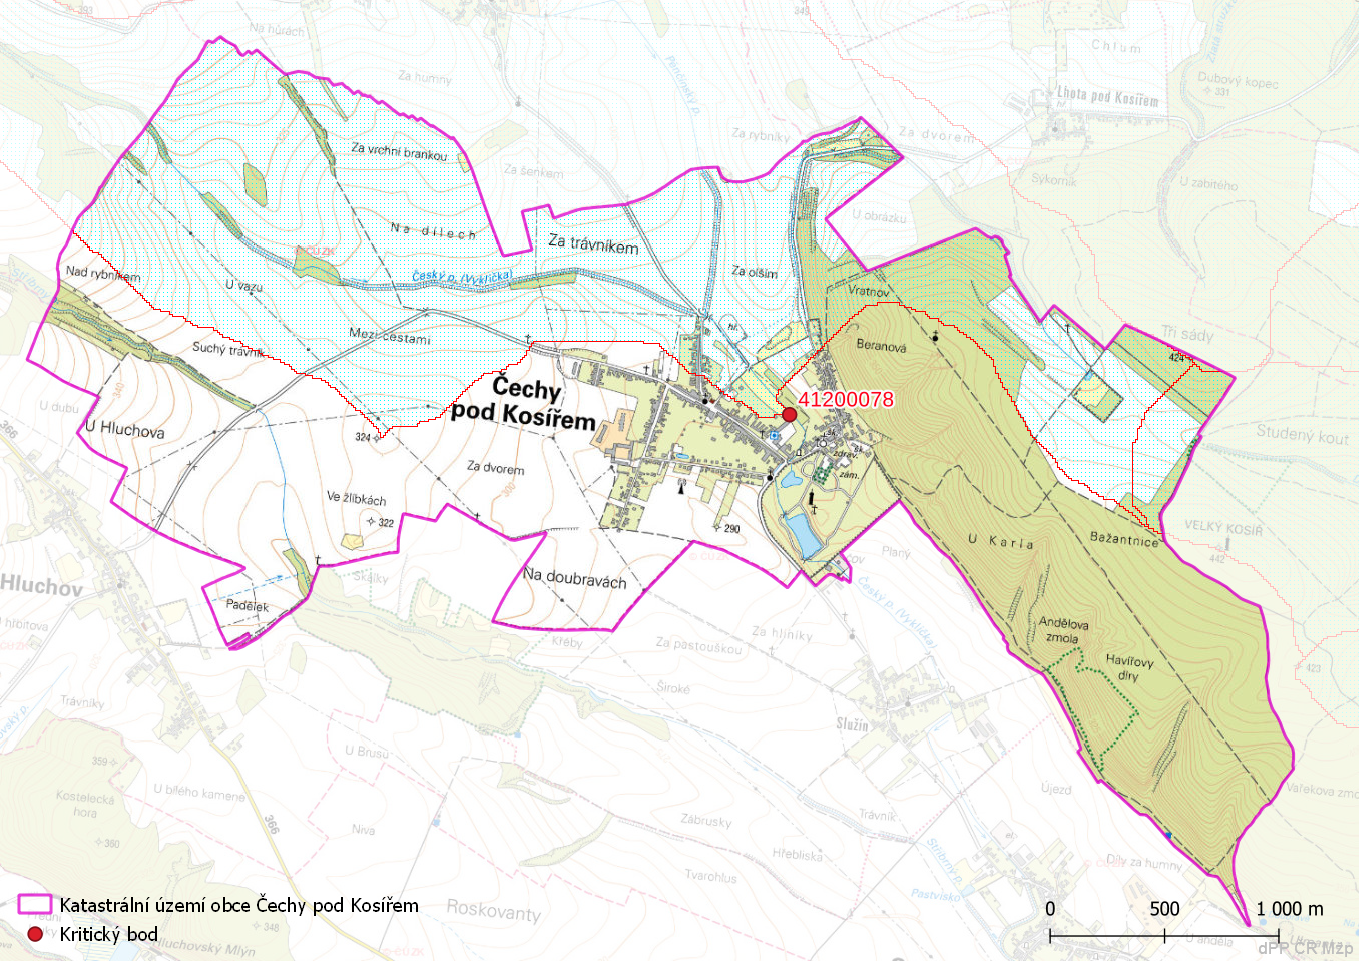 Zhodnocení vzniku přívalových povodní na území obce Čechy pod Kosířem metodou kritických bodů